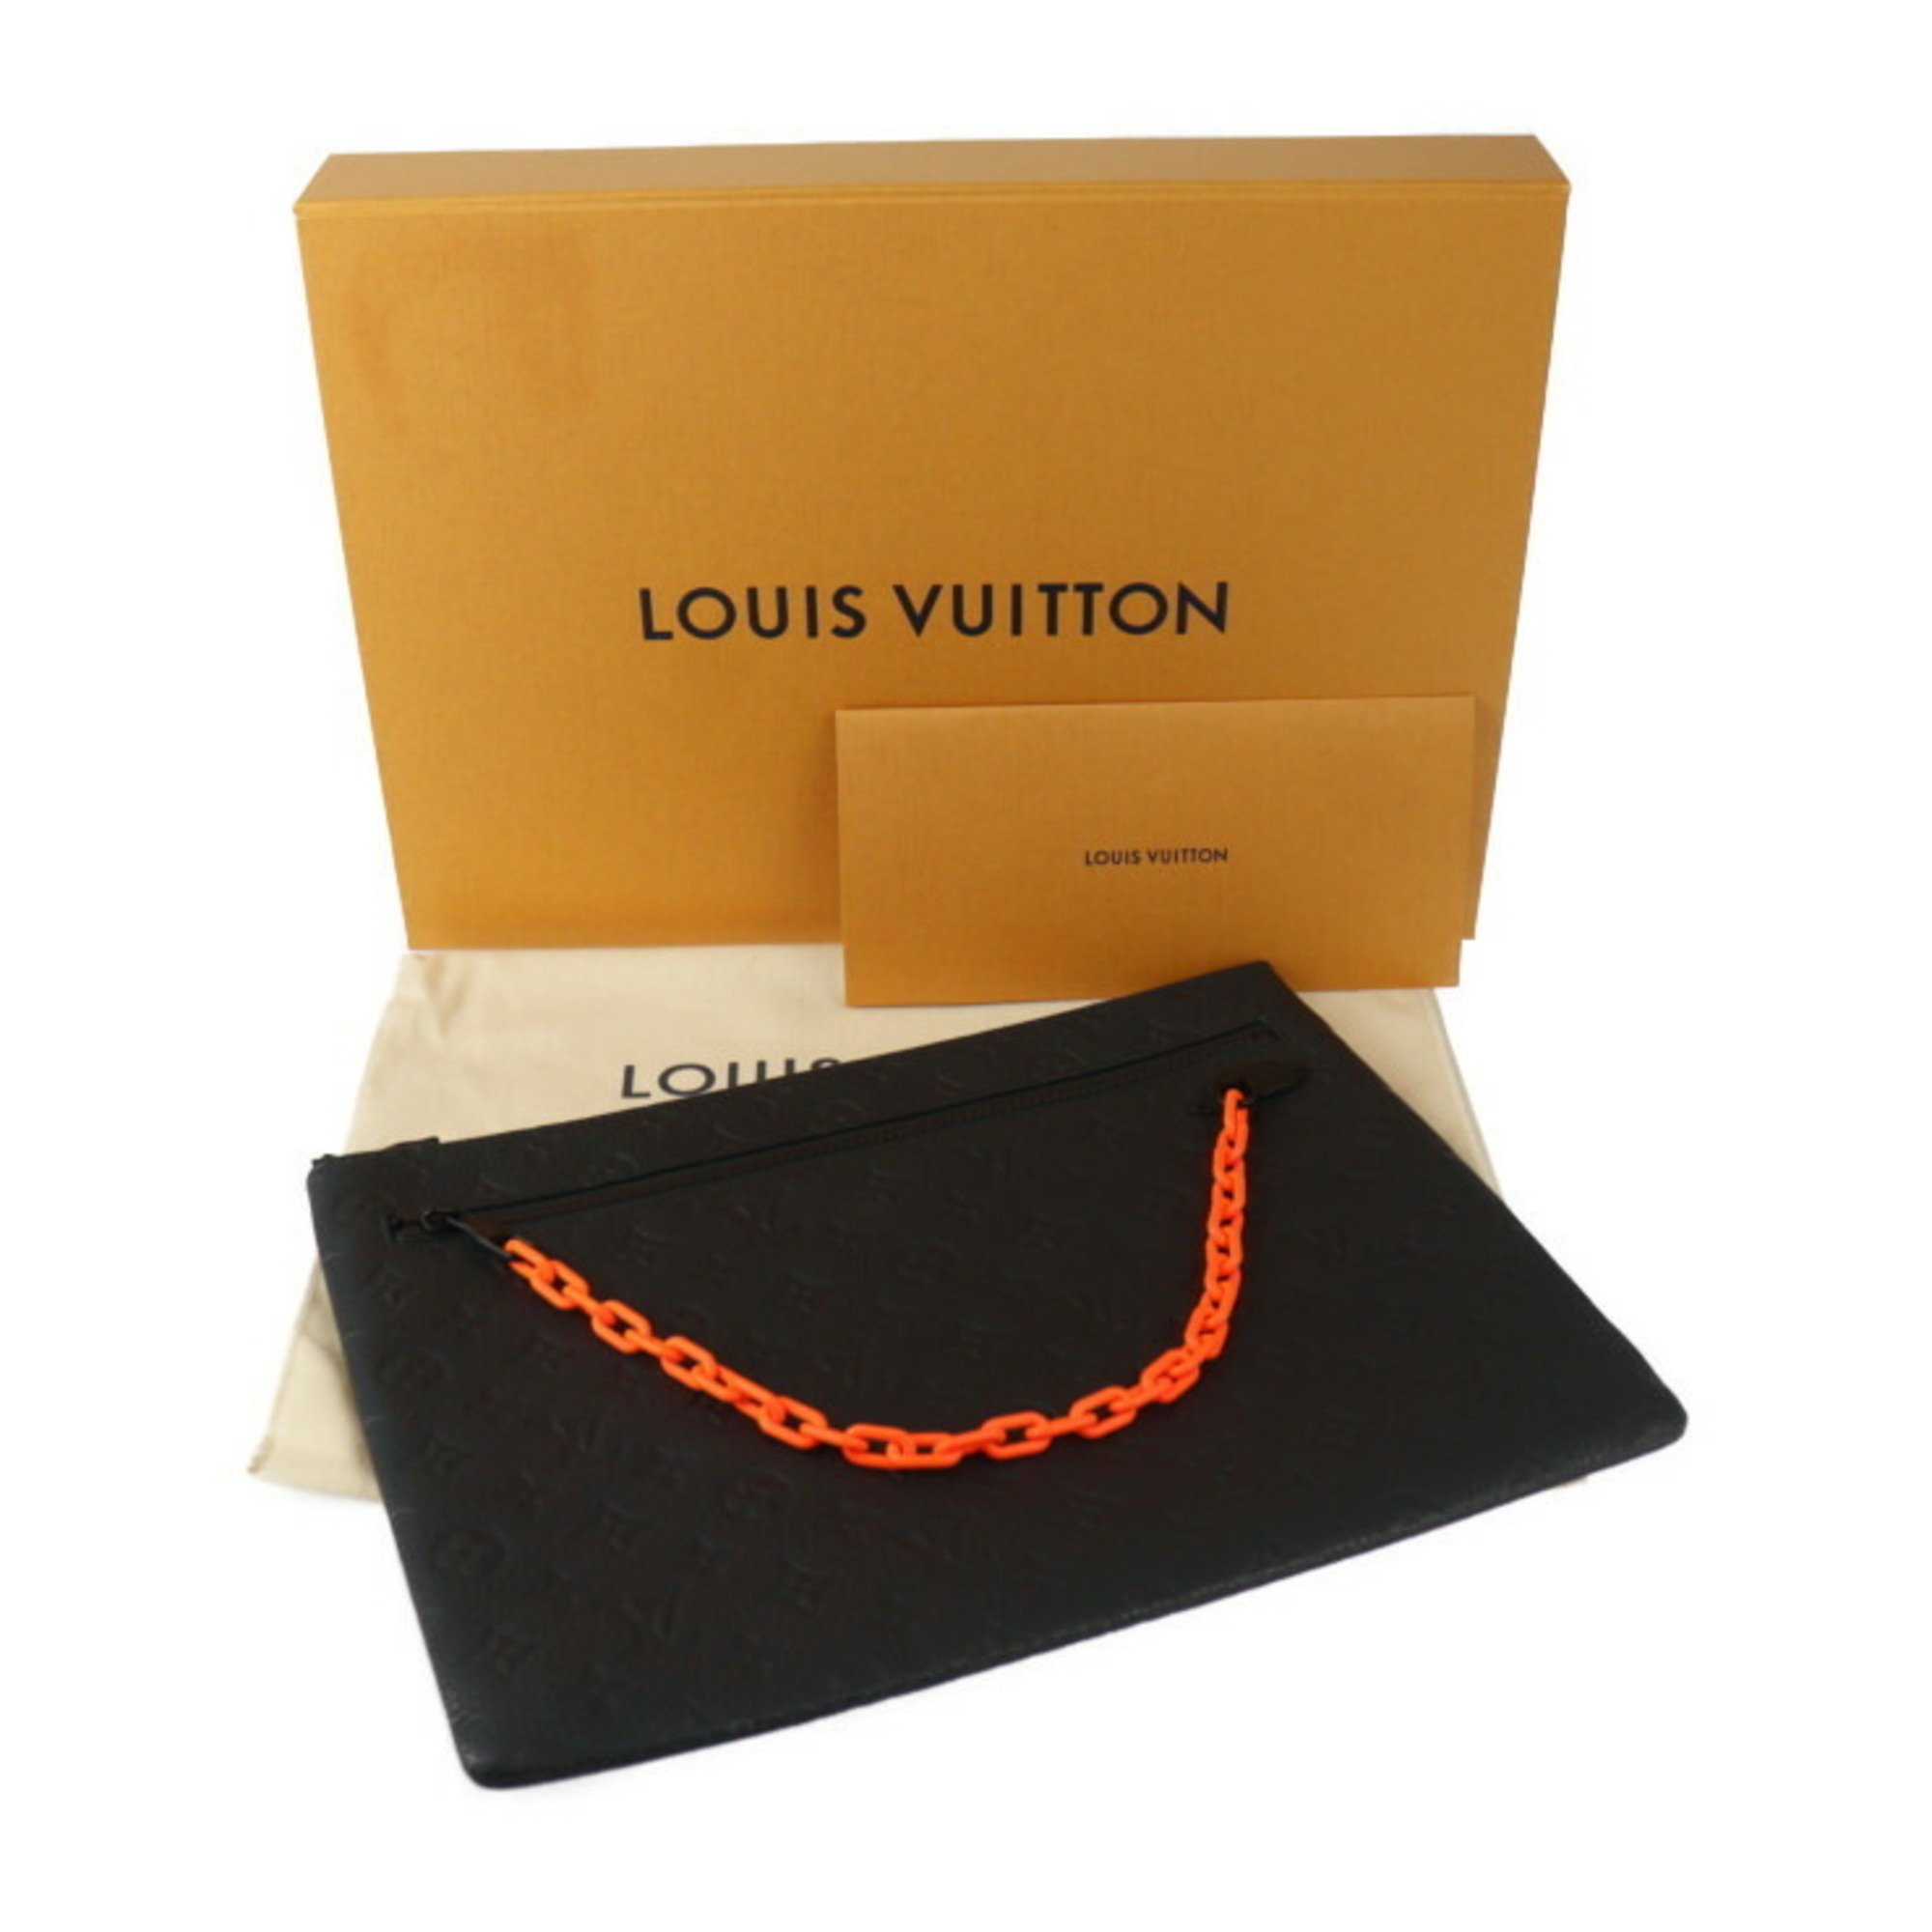 LOUIS VUITTON Louis Vuitton Pochette Monogram Second Bag M67461 Taurillon Leather Black Clutch Pouch